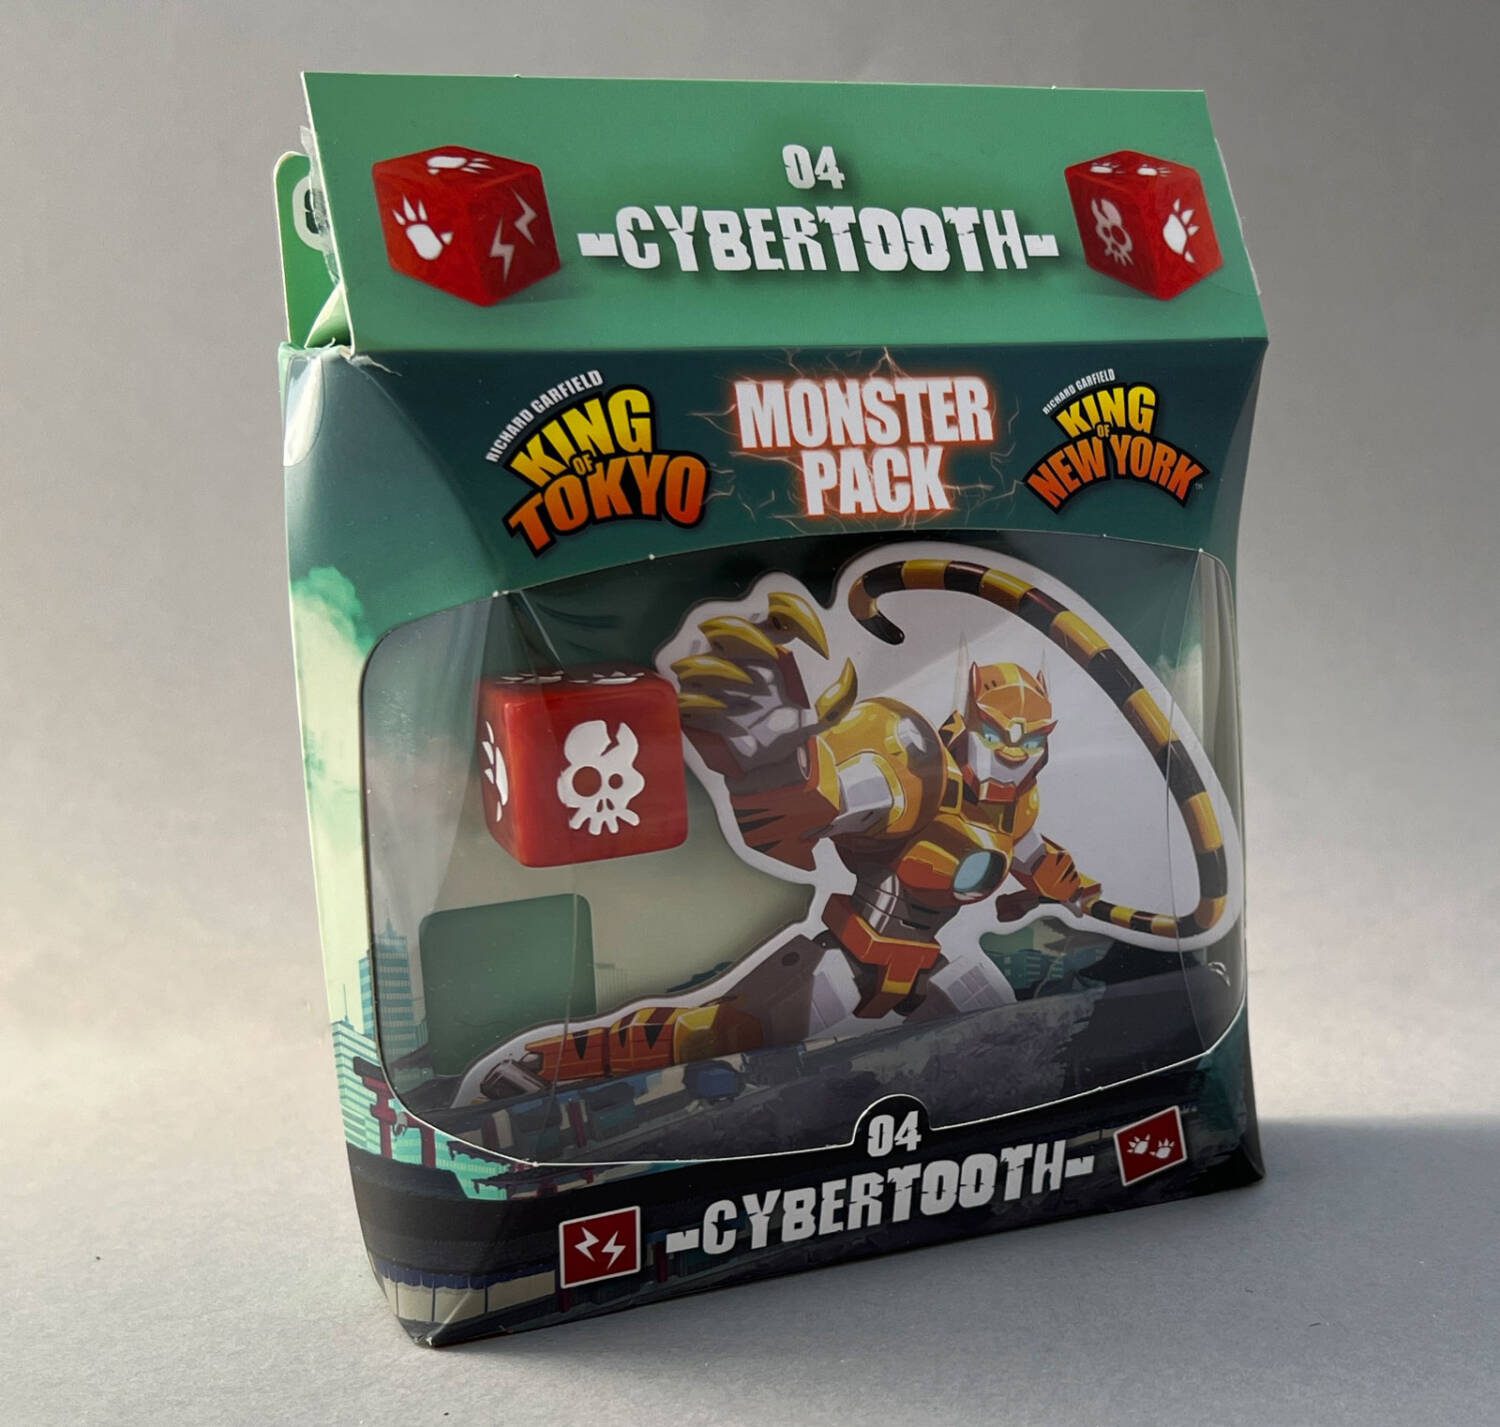 Cybertooth Box